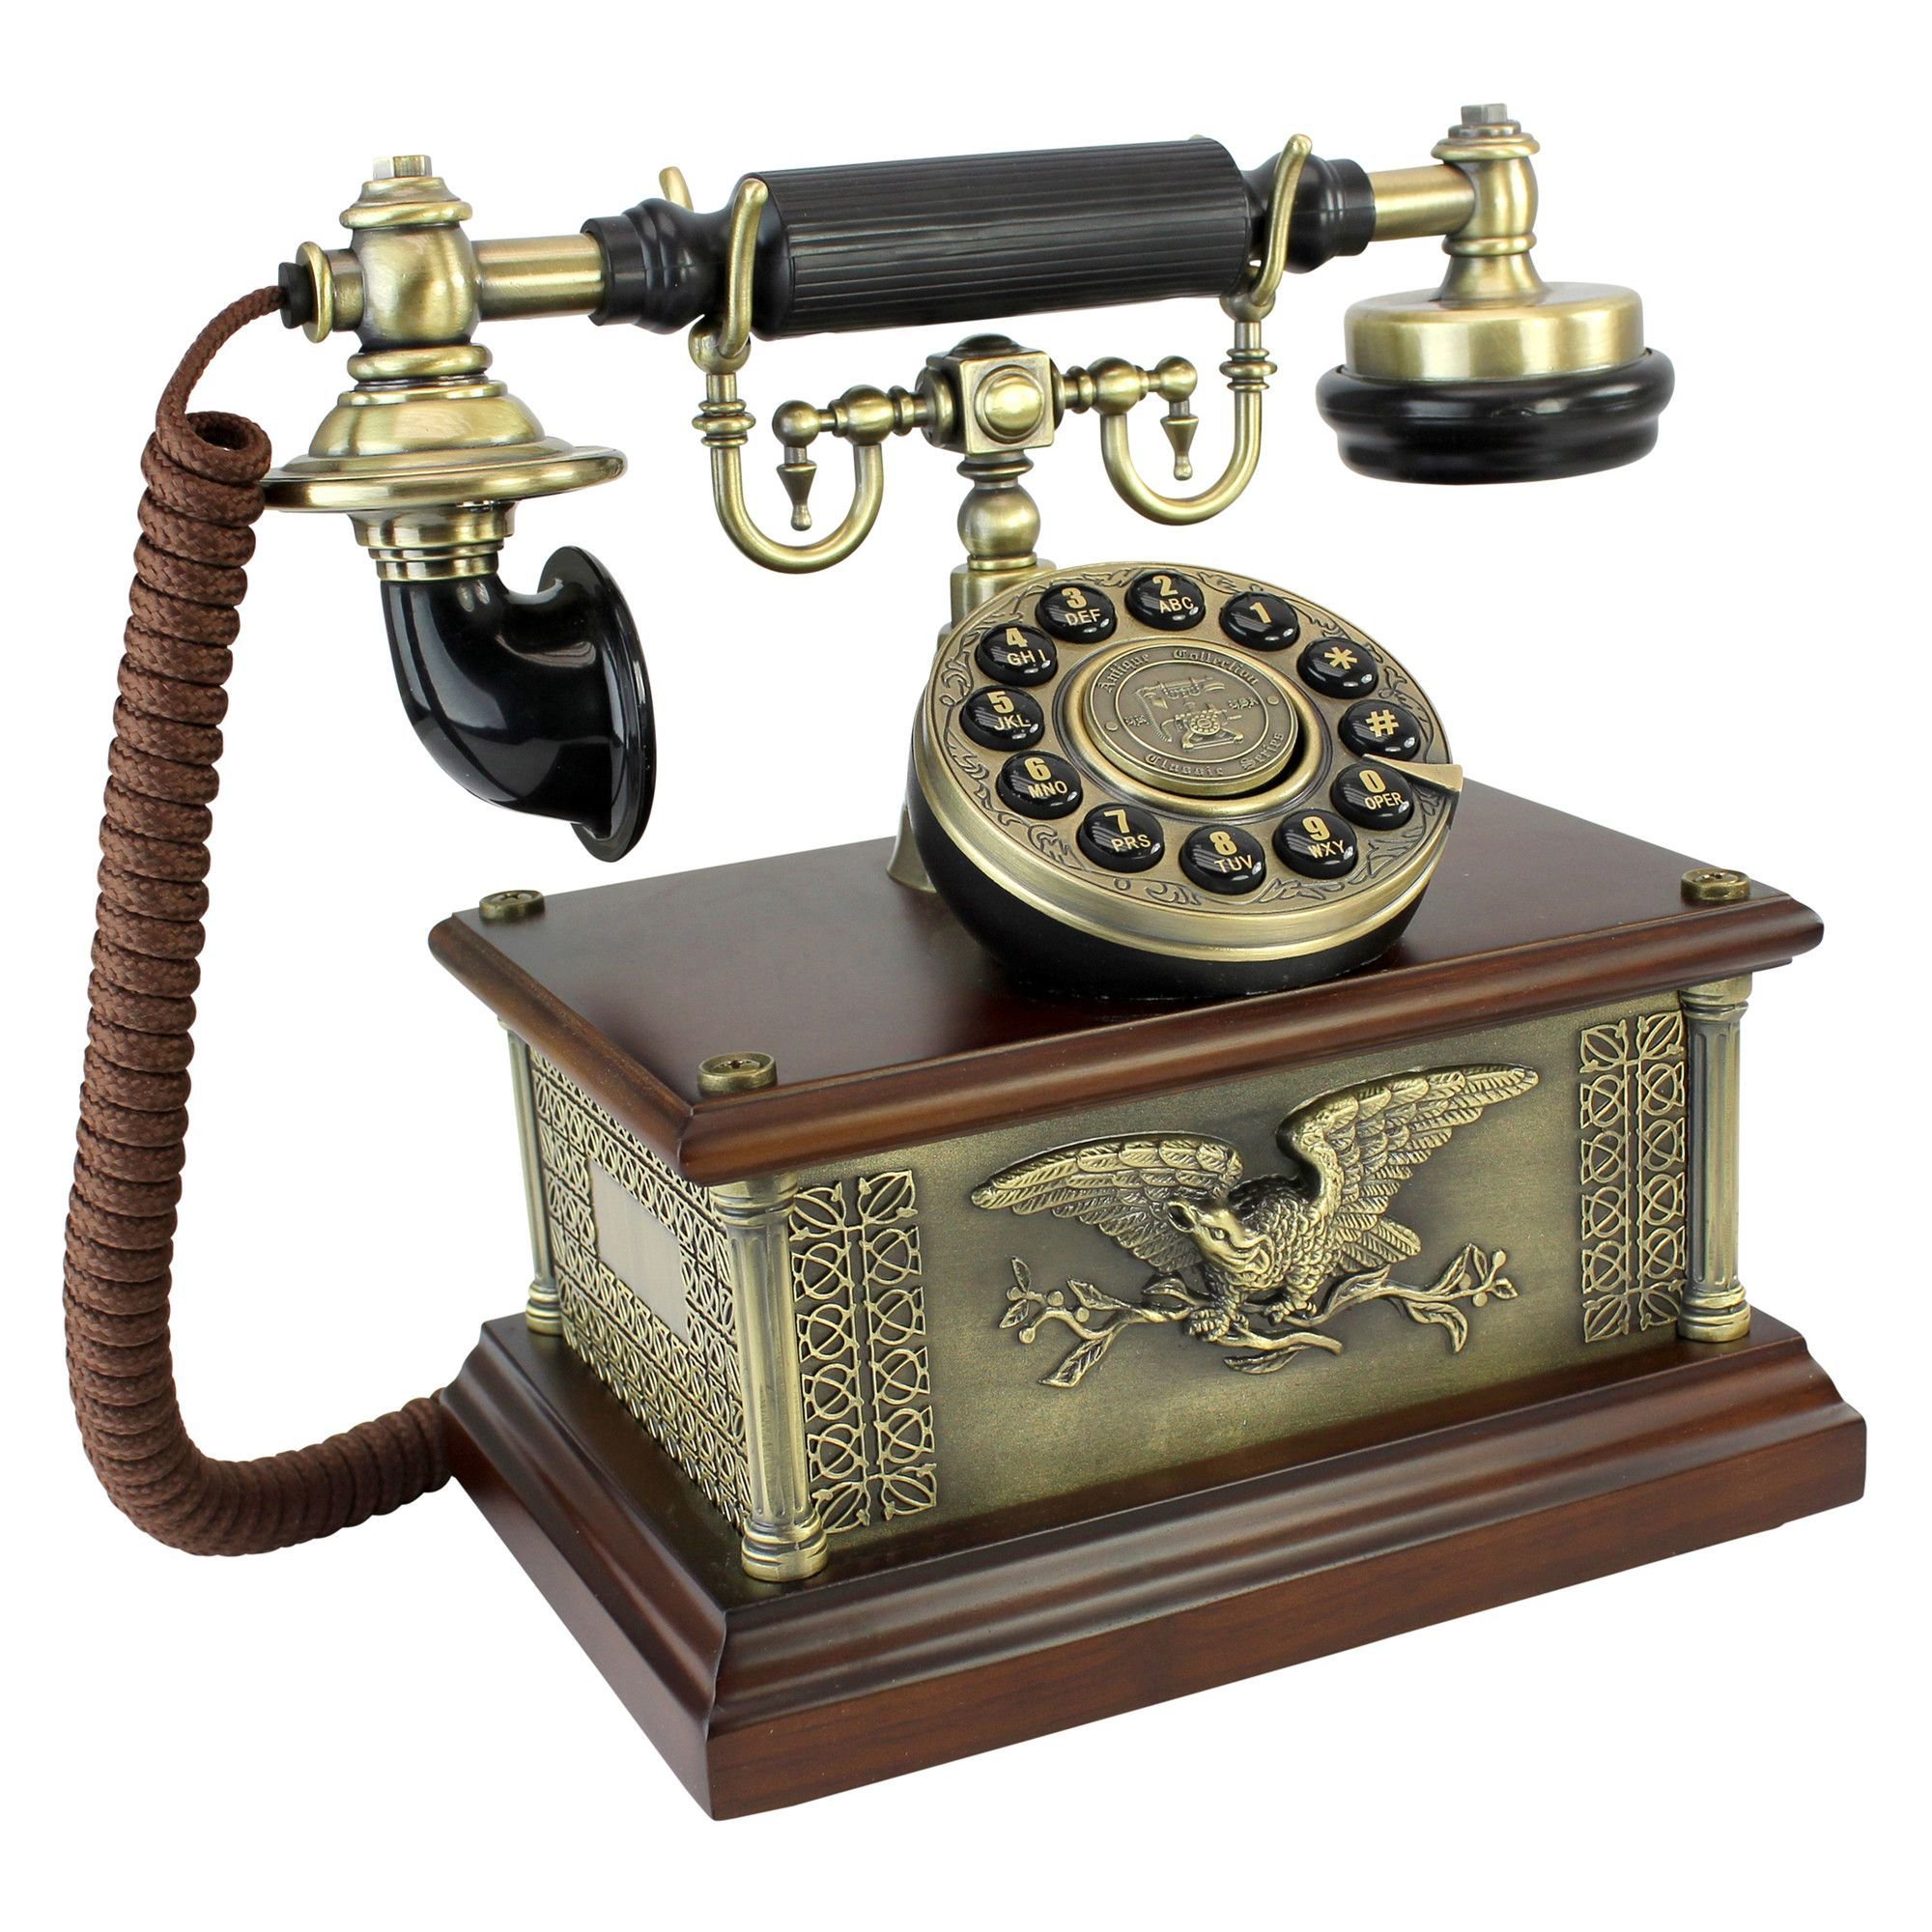 Картинки телефонных аппаратов. Телефонный аппарат Бойля 1896. Телефонный аппарат 9101. Старинный телефонный аппарат. Винтажный телефонный аппарат.